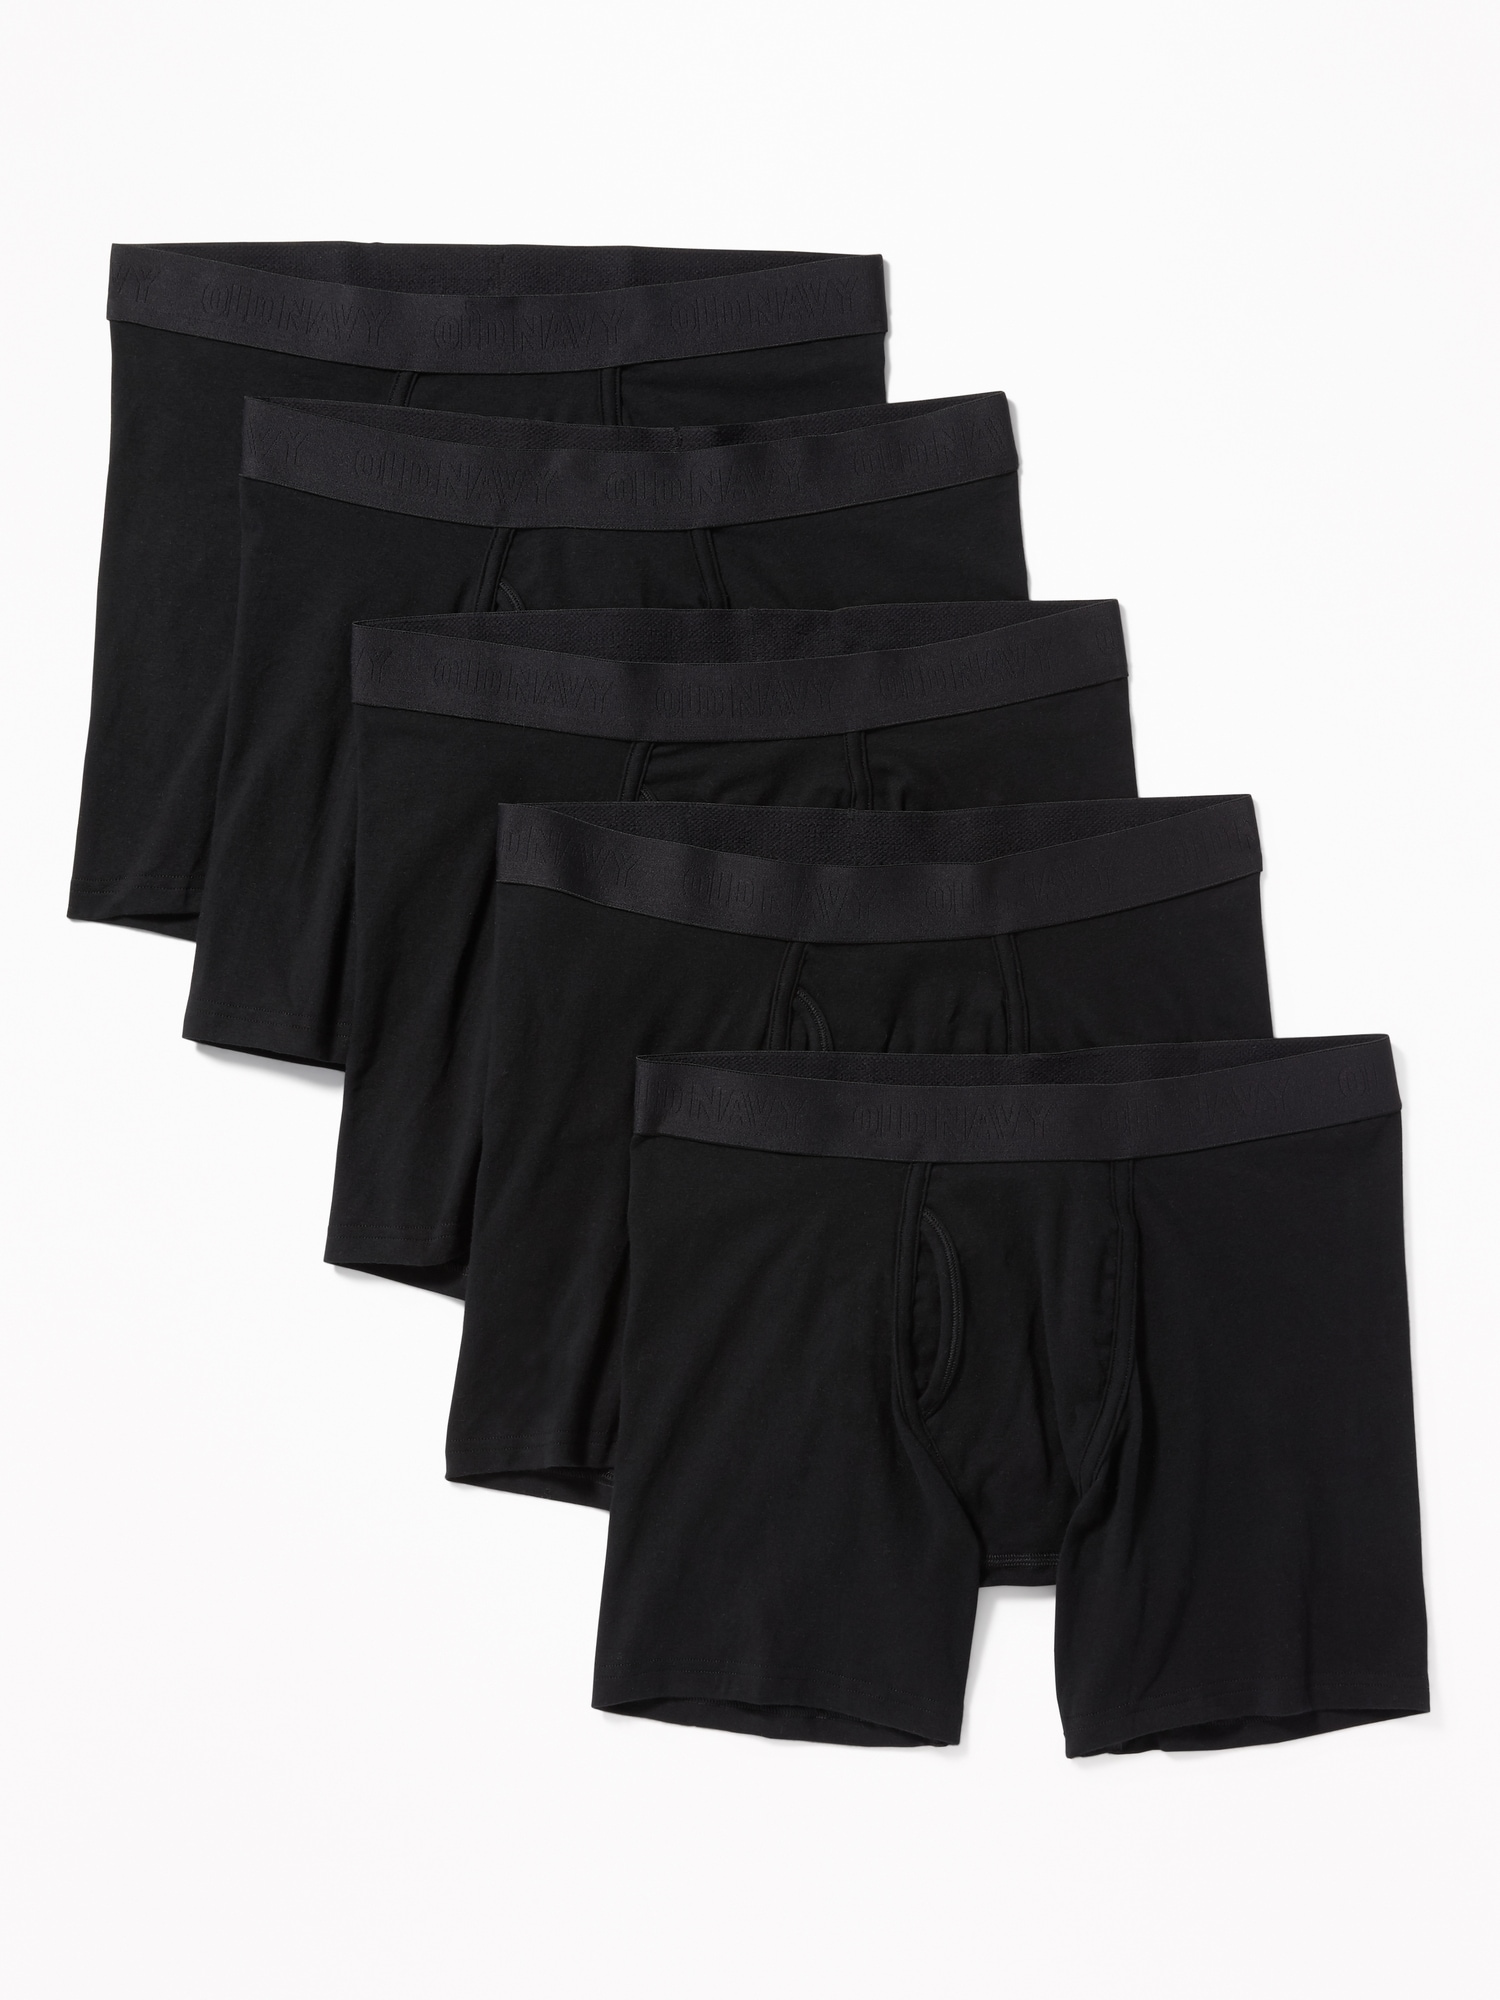 Old Navy Soft-Washed Built-In Flex Boxer-Briefs Underwear 5-Pack for Men -- 6.25-inch inseam black. 1